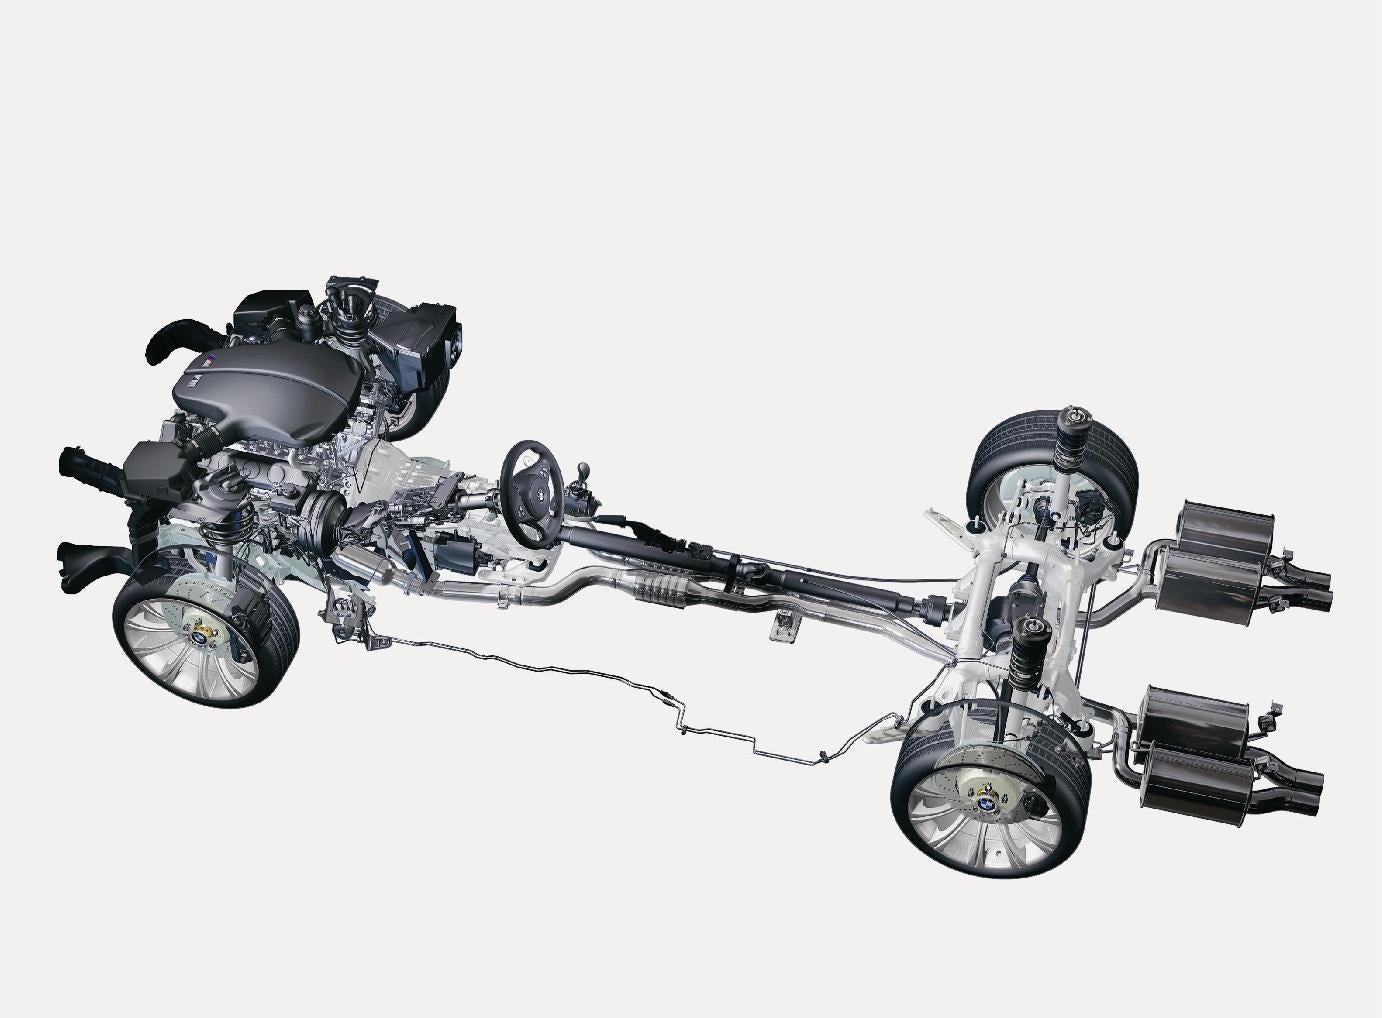 Х5 задний привод. БМВ е60 полный привод. Трансмиссия БМВ е60 полный привод. E53 BMW трансмиссия. БМВ е60 передняя подвеска полный привод.